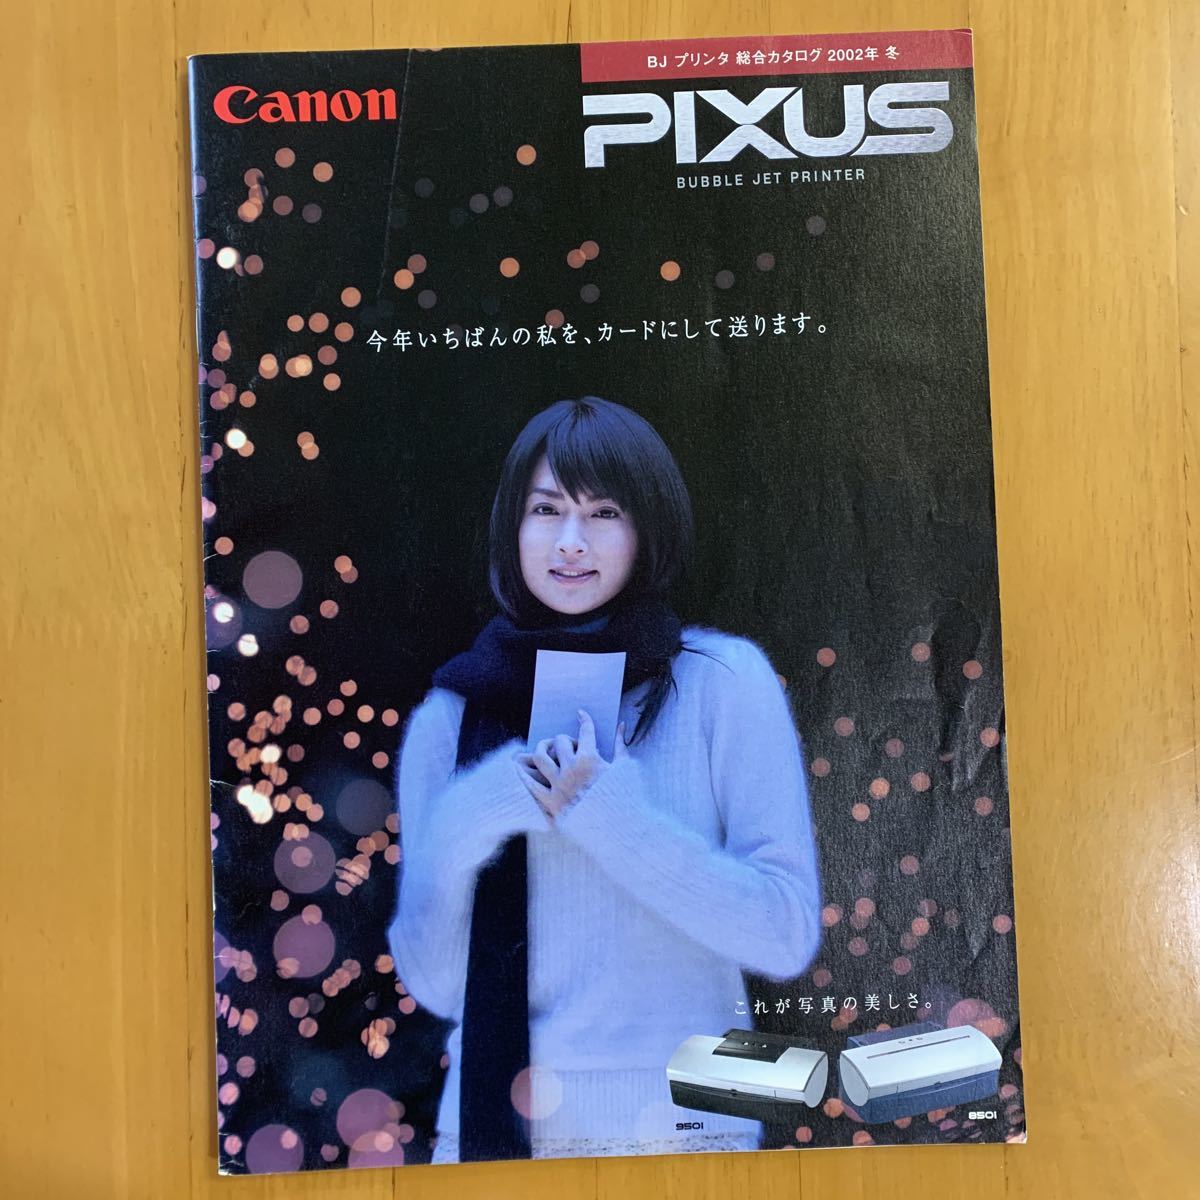 キャノンPIXUS プリンター カタログ 2002年 冬 長谷川京子_画像1